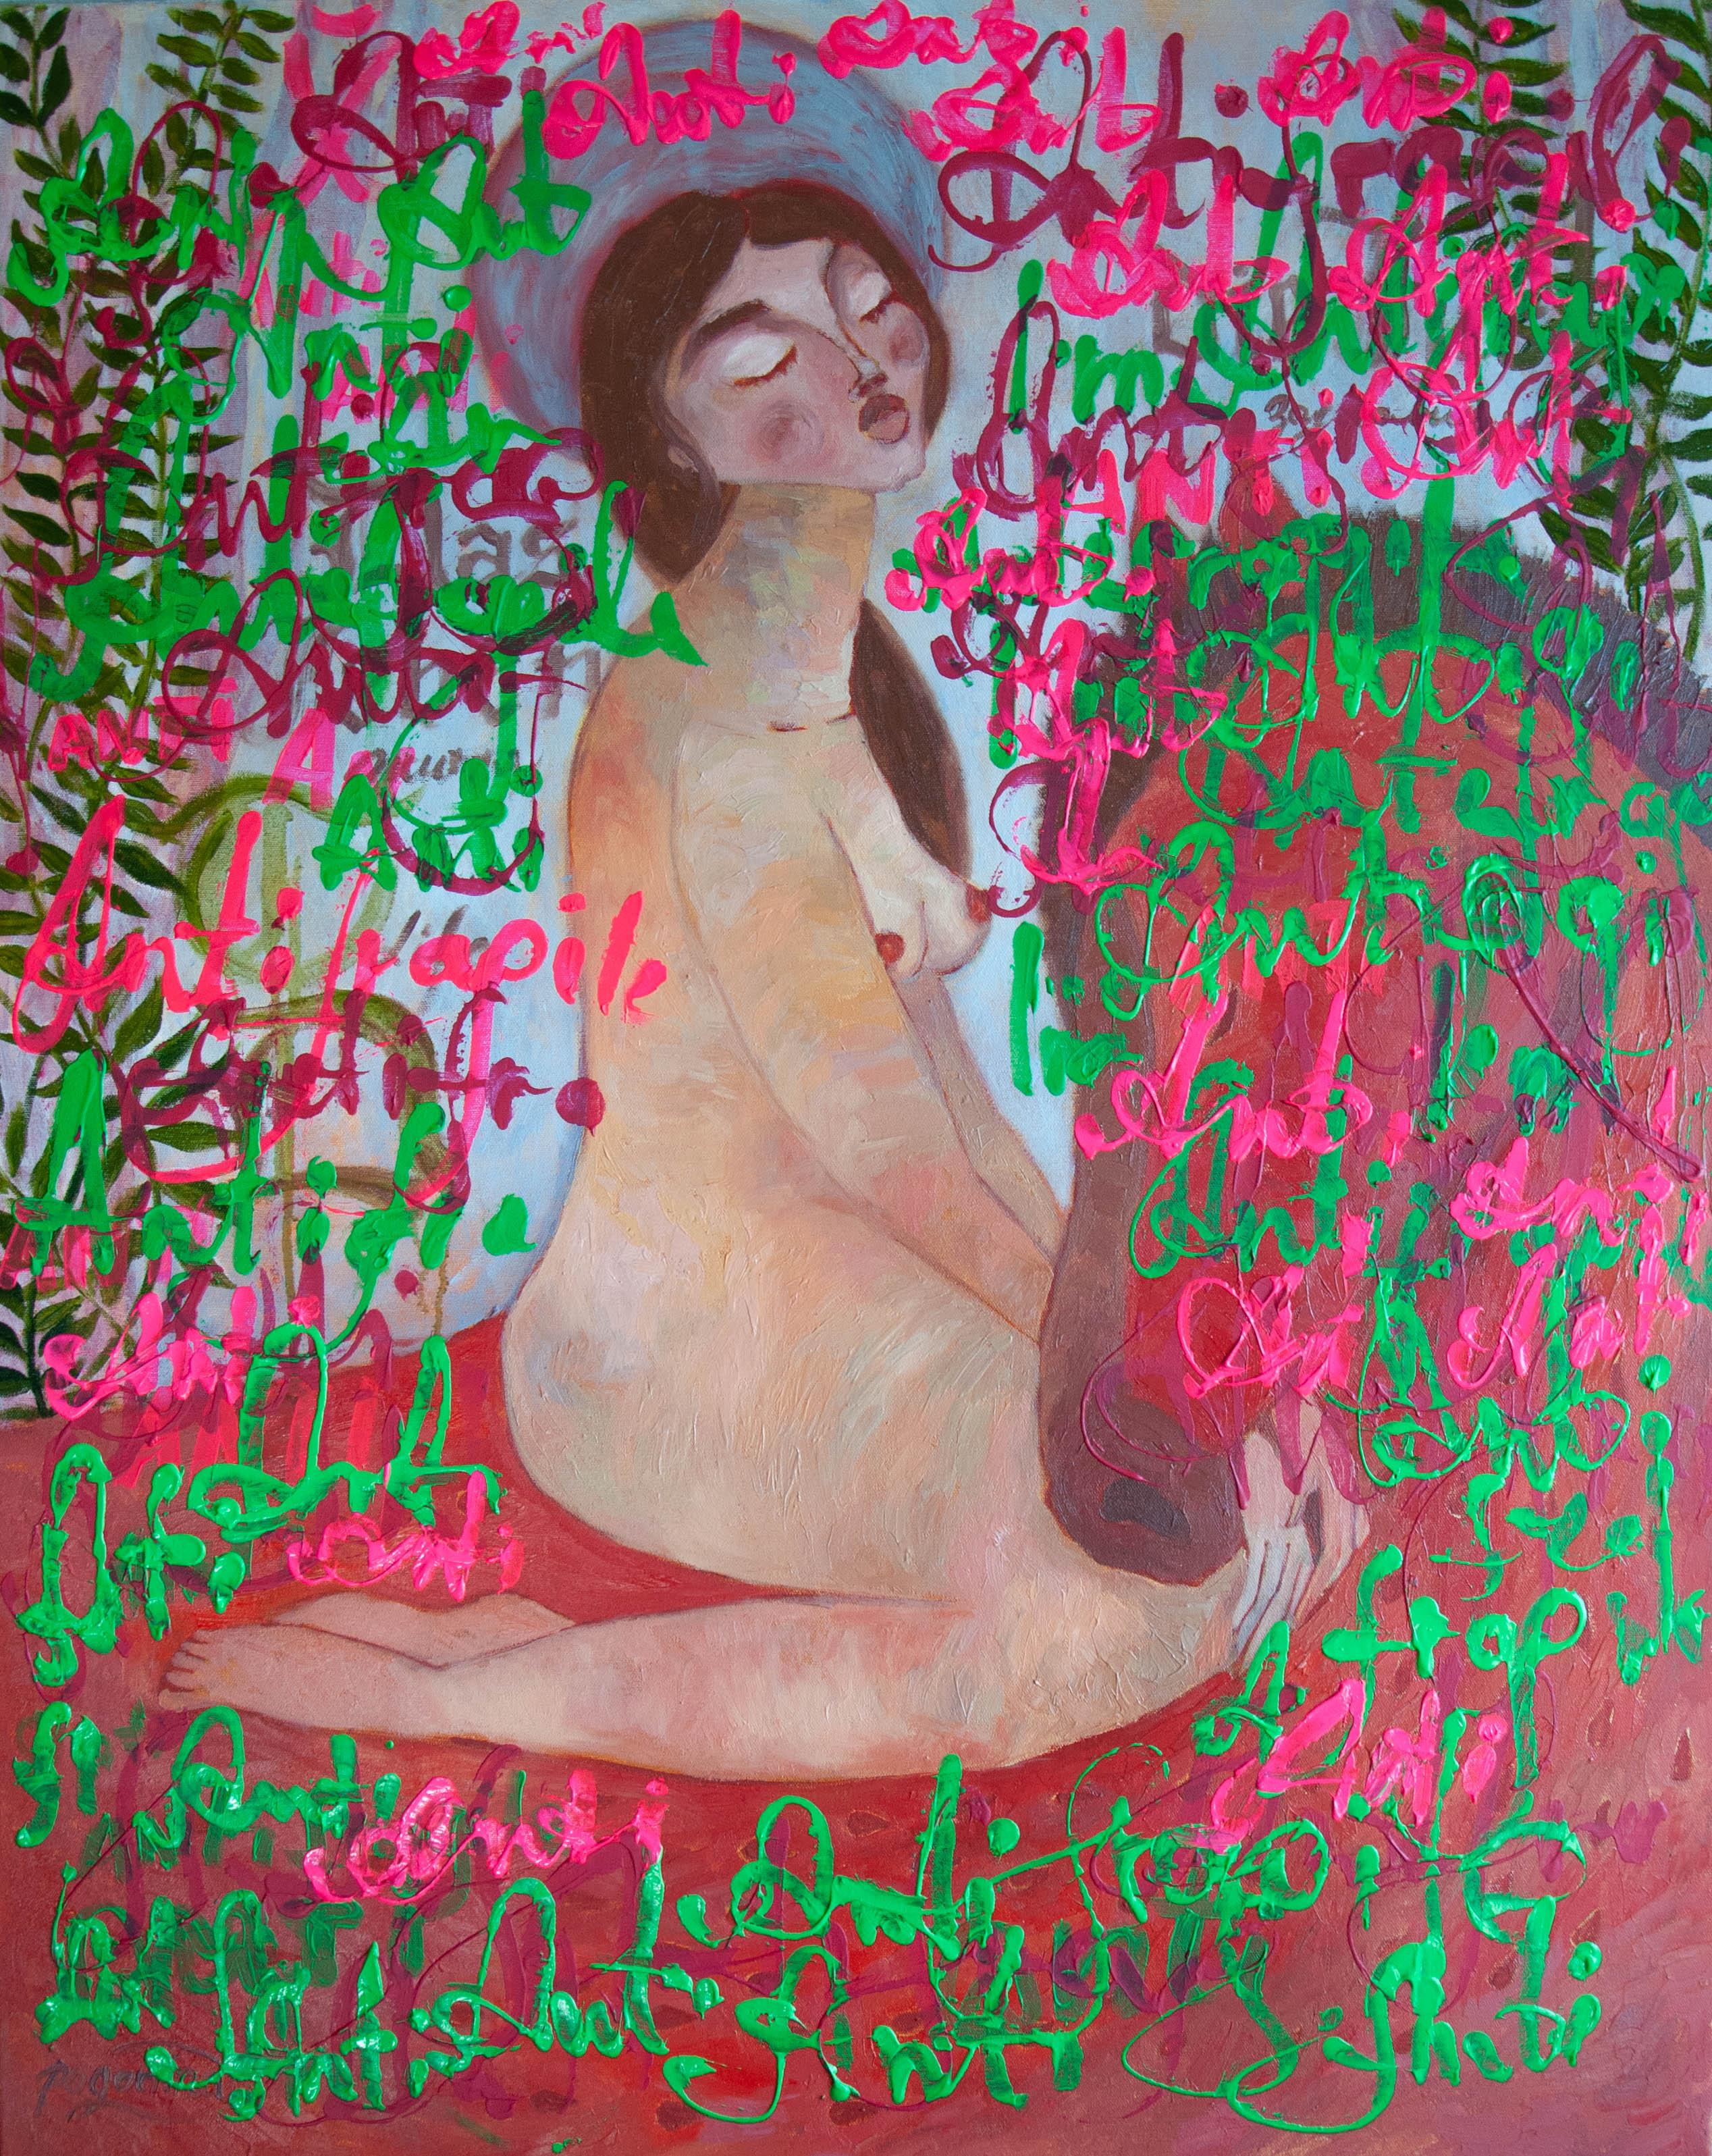 Femme nue, Pop Art, toile, techniques mixtes  - ANTIFRAGILE - 100x80 cm